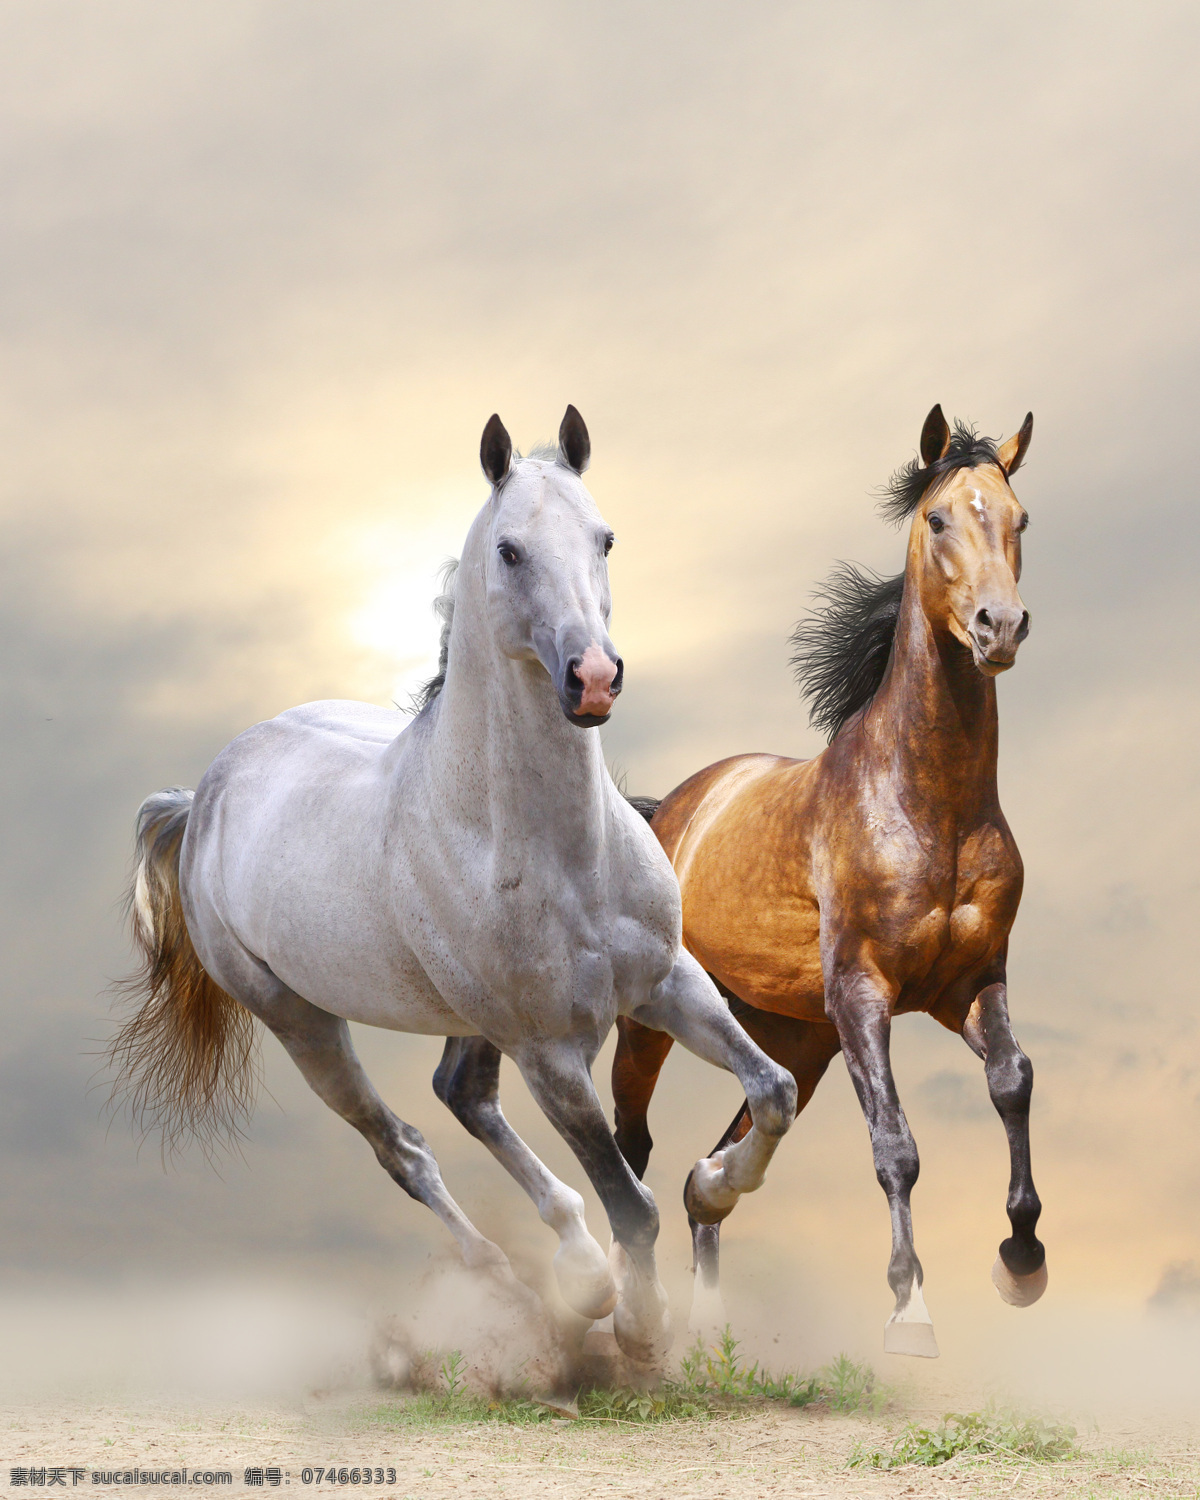 奔跑 马匹 奔驰的白马 骏马 马 奔跑的马匹 马年素材 陆地动物 生物世界